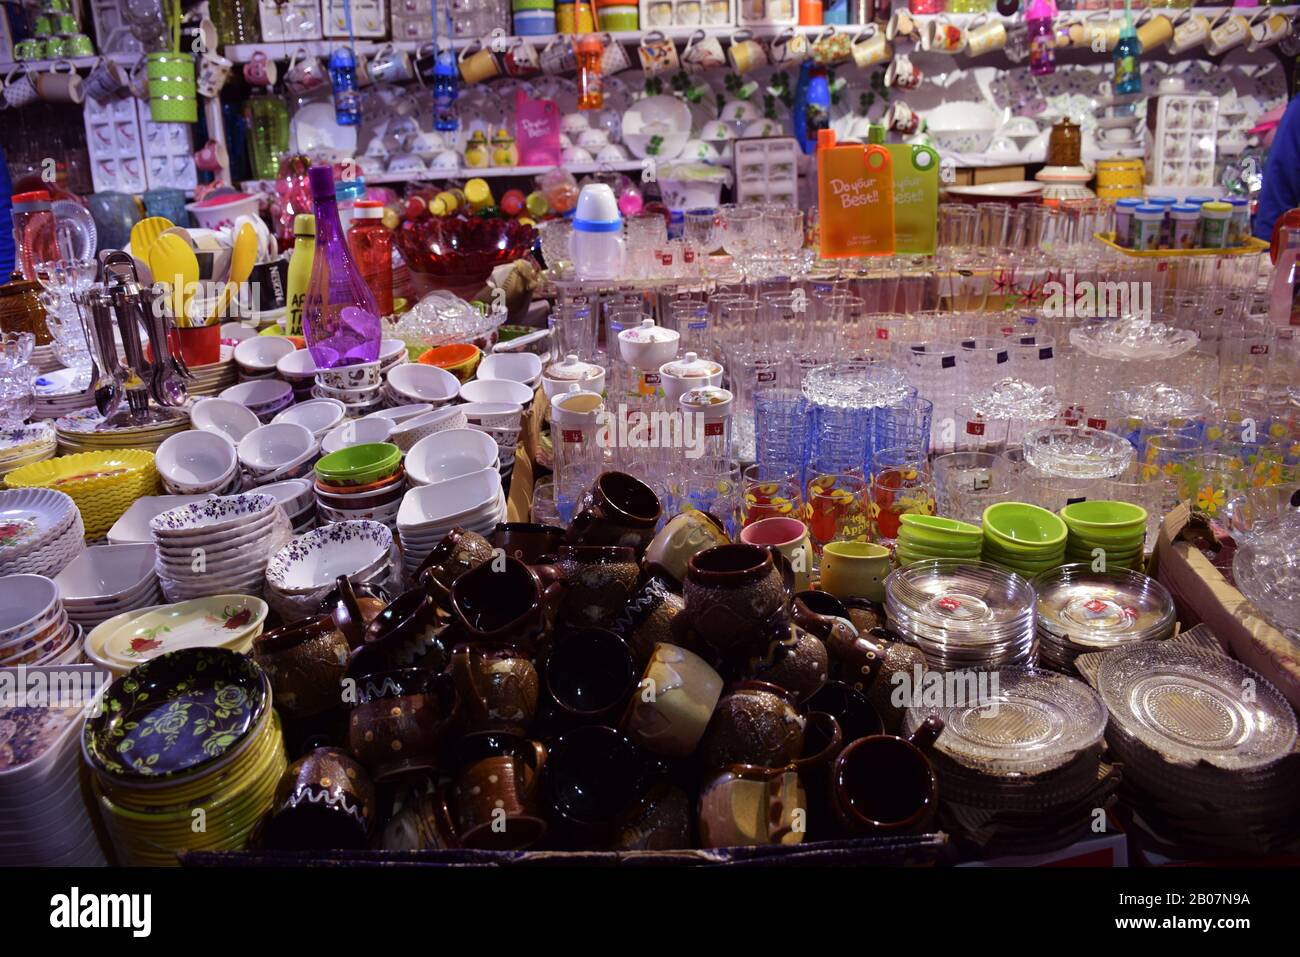 Articoli domestici come tazze, piatti, bottiglie di plastica ecc esposti per la vendita ad una fiera in India. Foto Stock